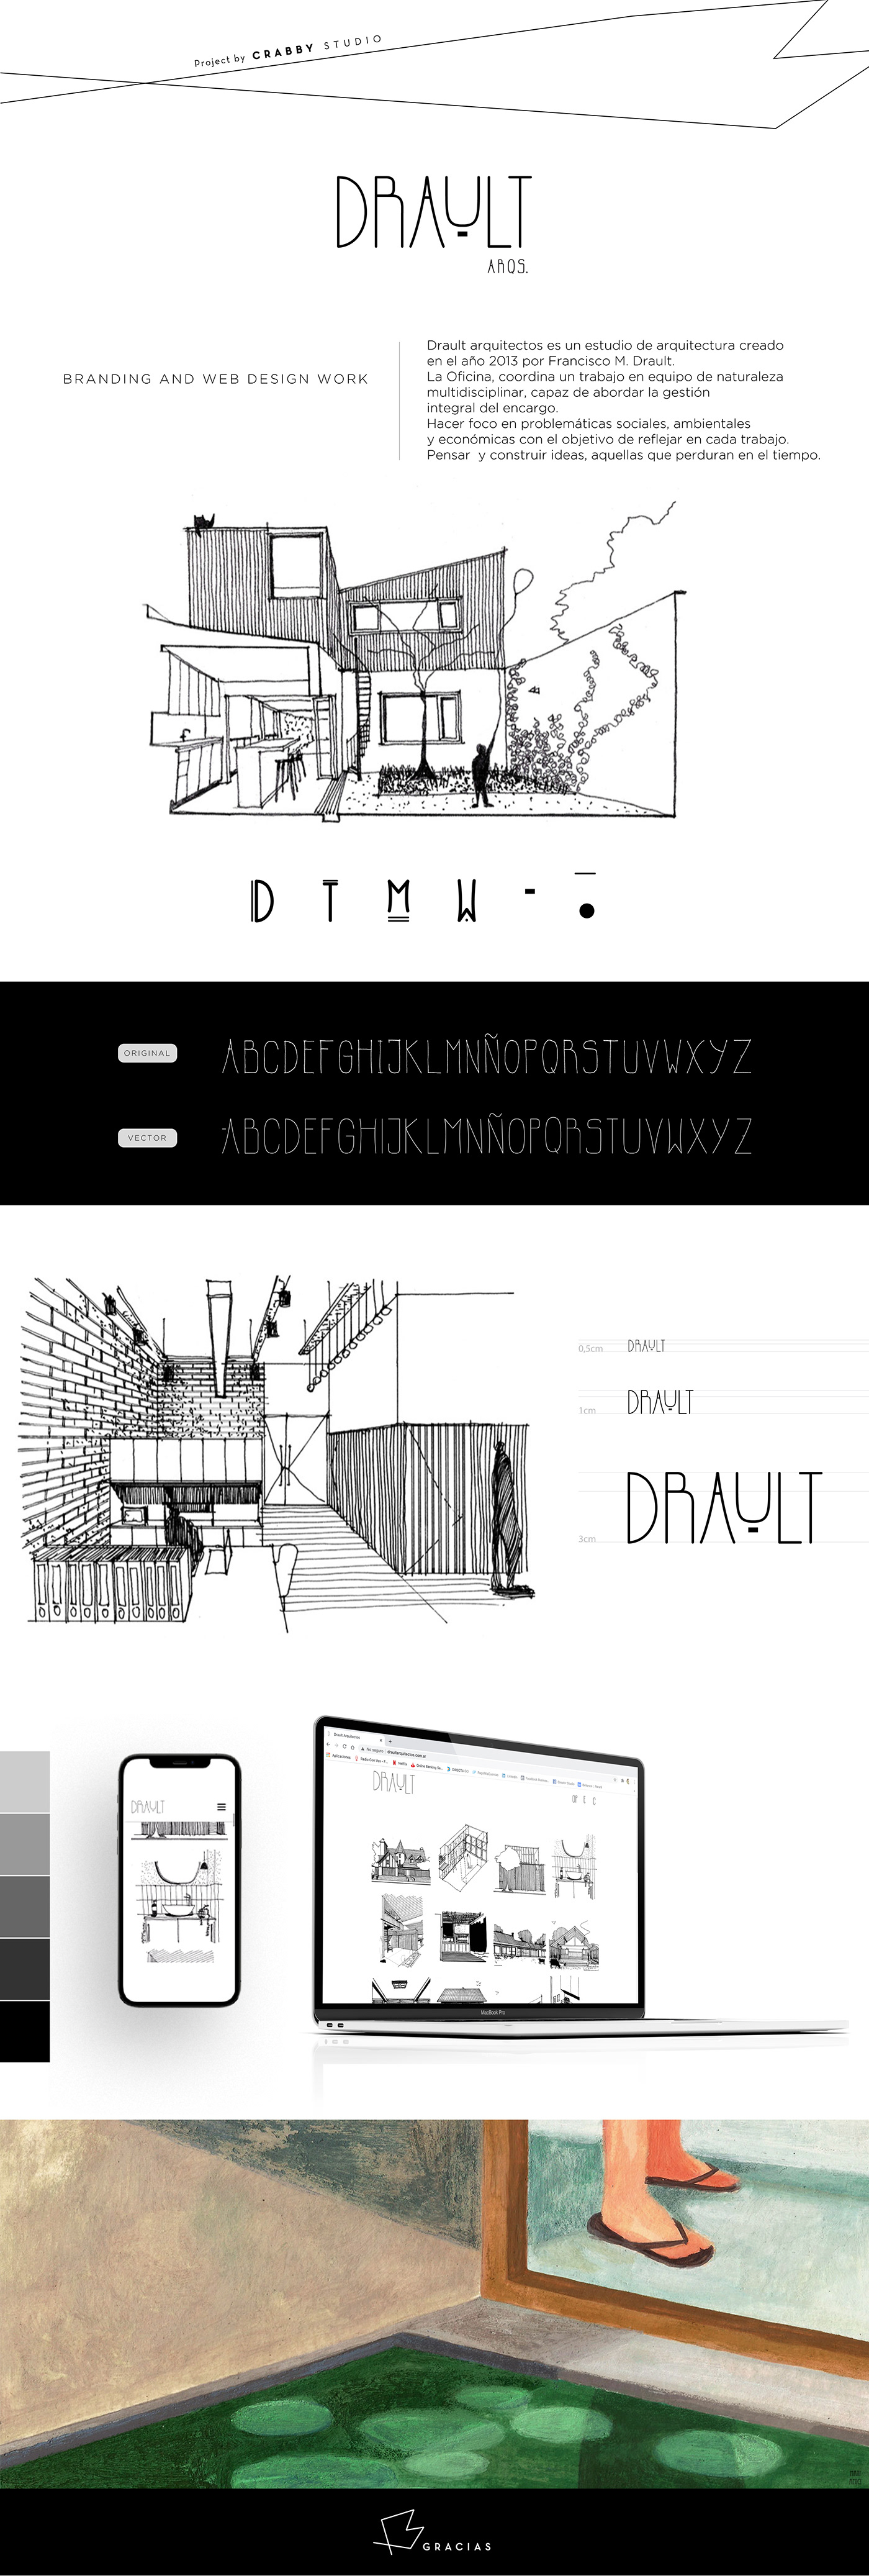 institucional arquitecture drault arquitectos tipografia identidad marca Web